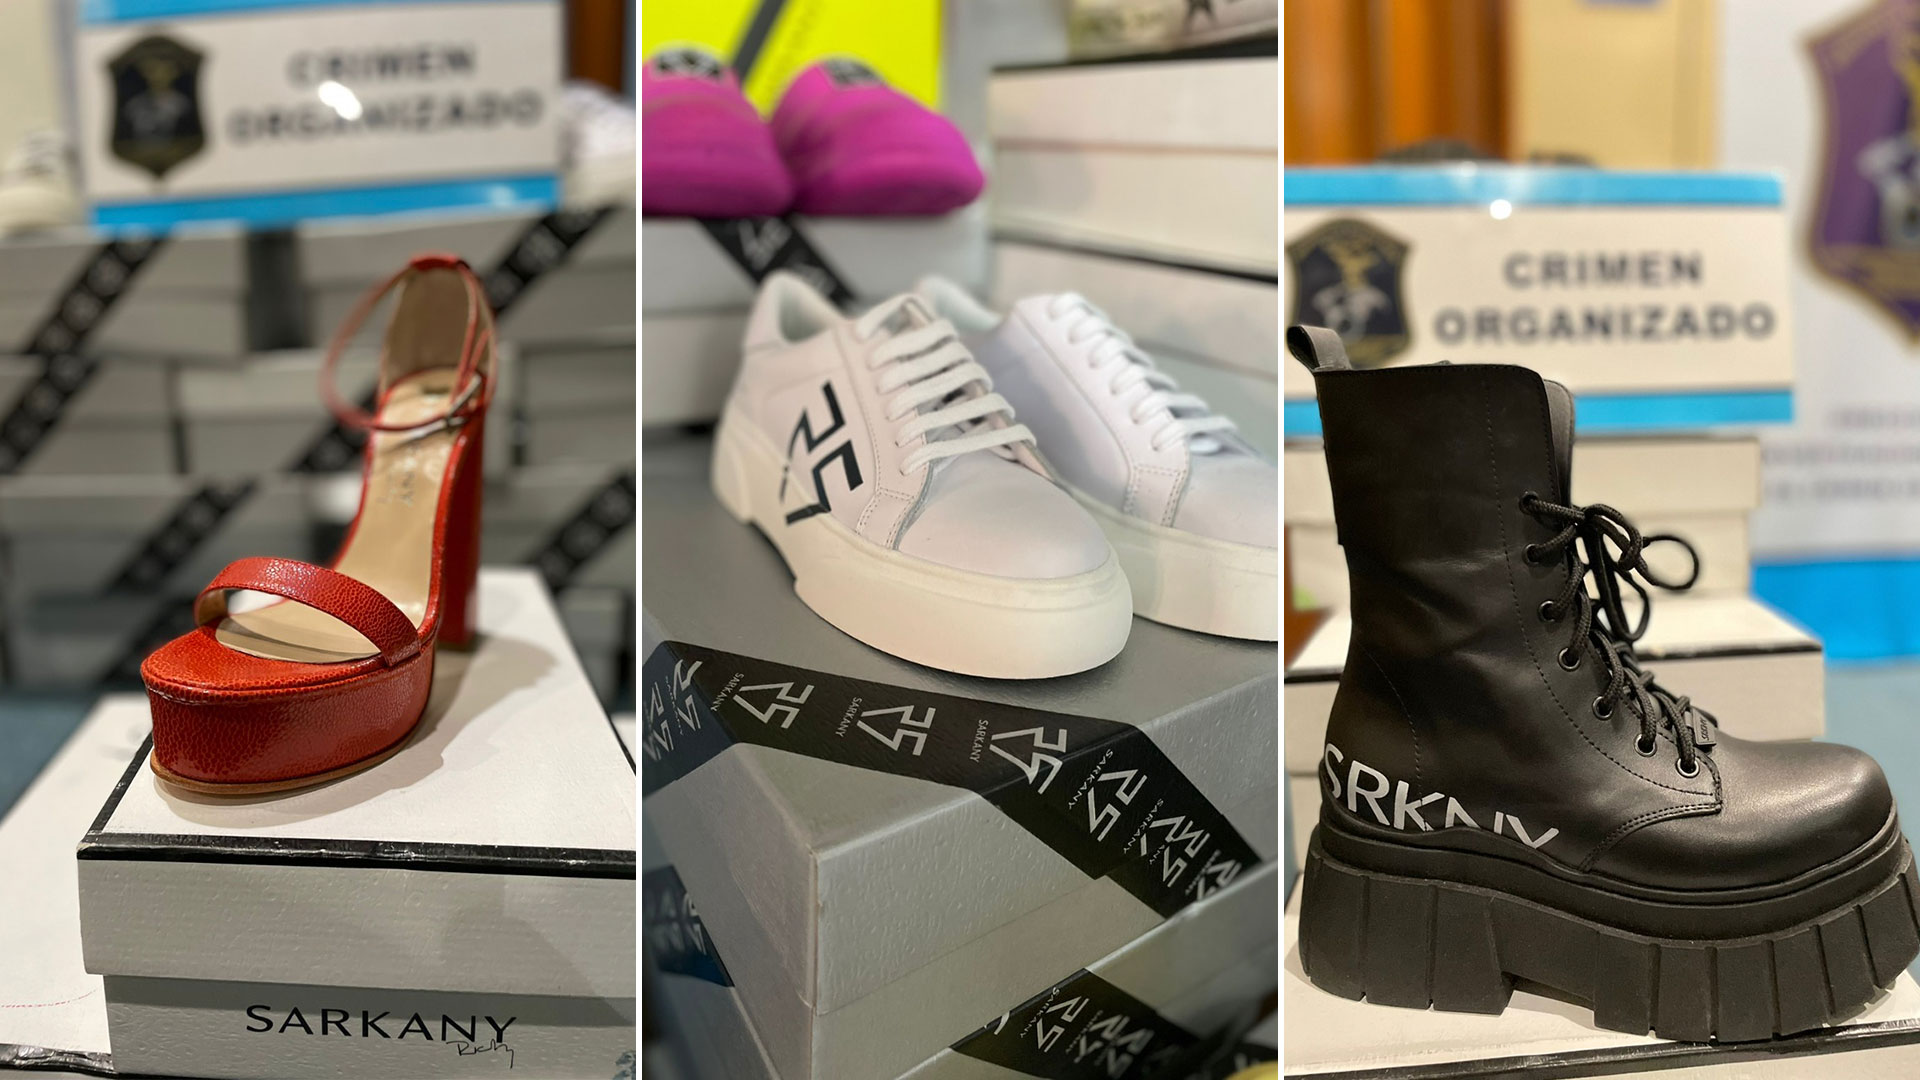 Avanza la investigación por la venta en redes sociales de calzado robado a Ricky Sarkany: incautaron $7 millones en mercadería